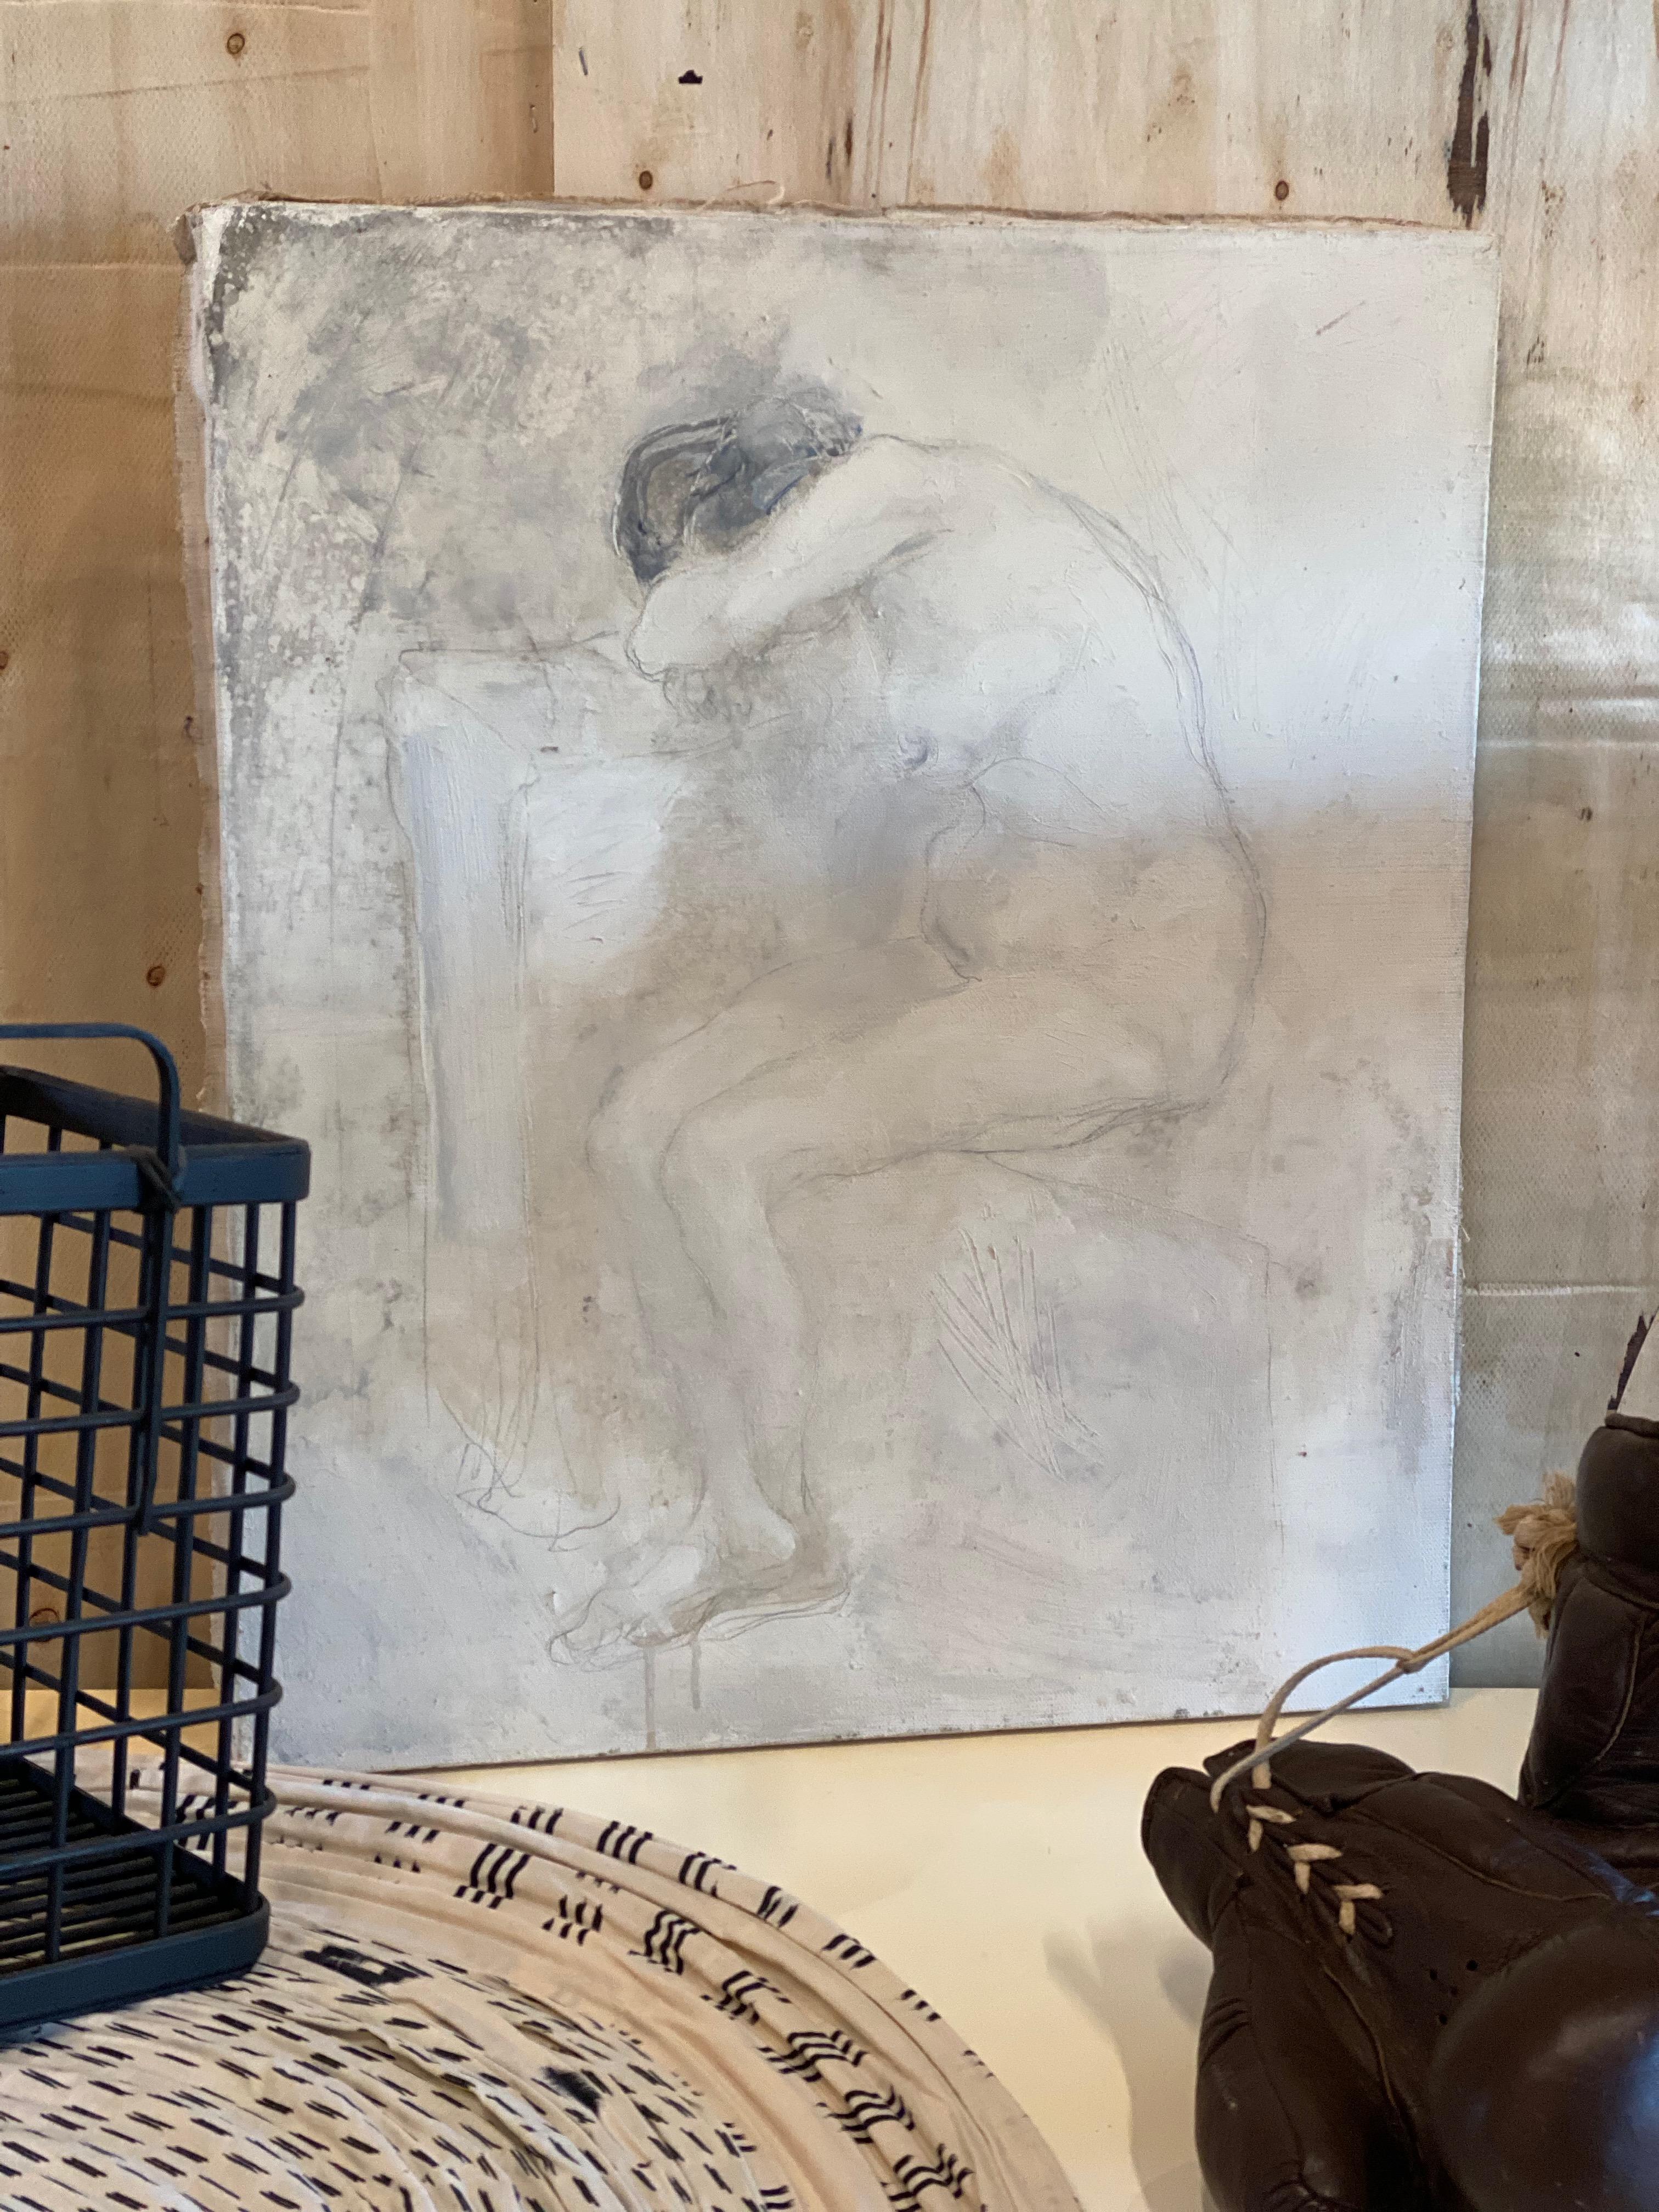 Peinture de Svetlin Roussev, nu féminin, technique de mélange sur toile.
Le tableau montre un nu féminin aux couleurs monochromes. Elle n'est pas encadrée et est signée au dos.
Svetlin Roussev est un artiste, politicien, collectionneur d'œuvres